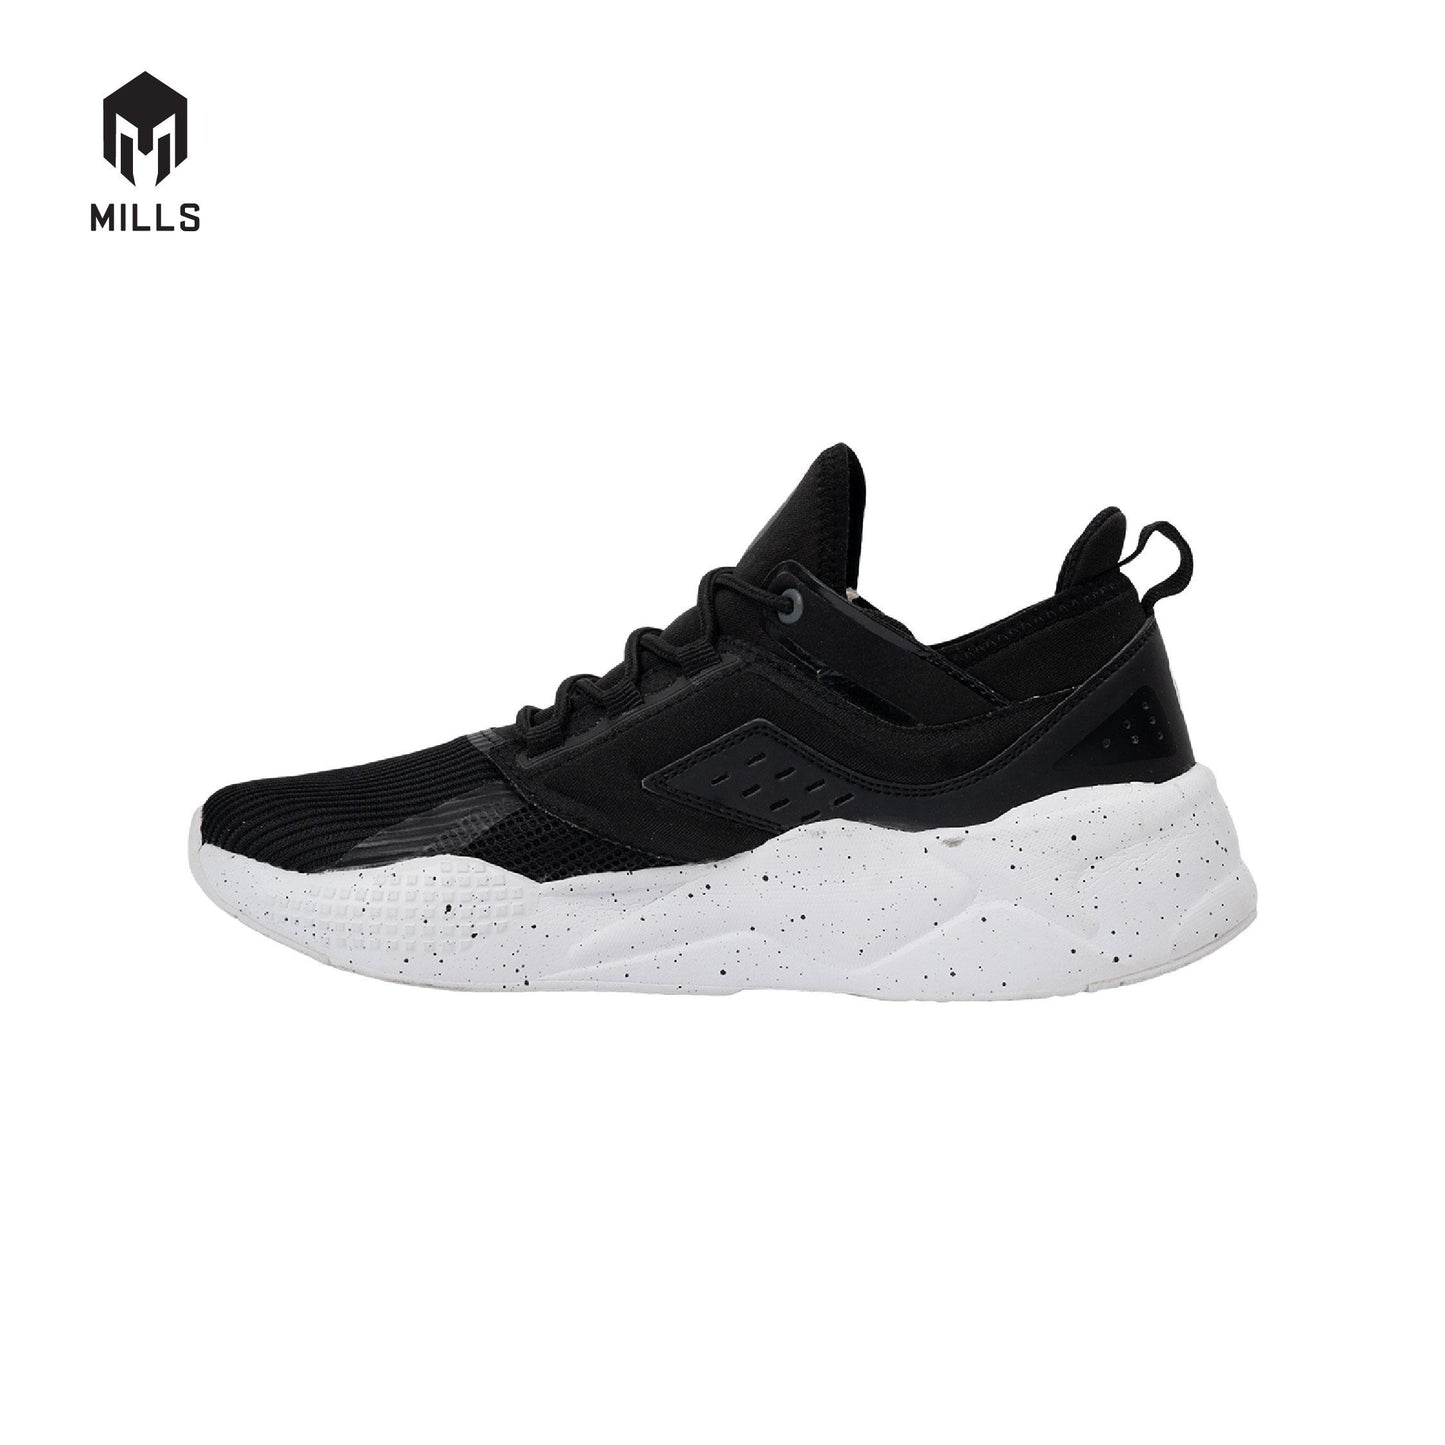 MILLS Sepatu Revolt Beta Black / White 9700902